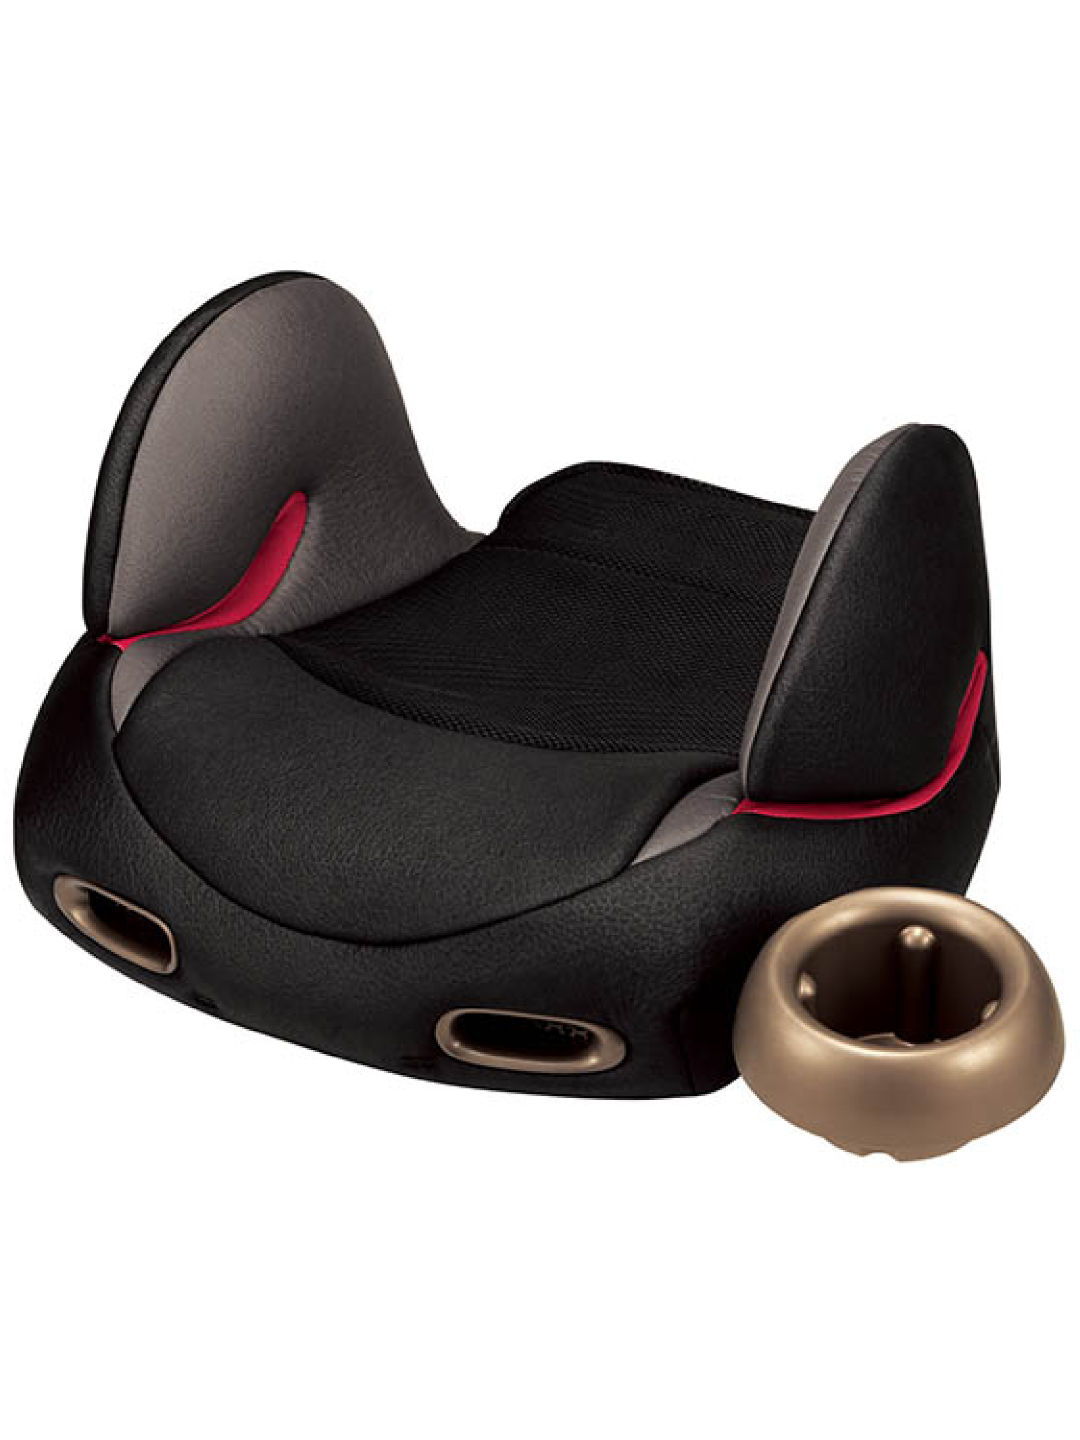 Combi Joykids Booster Seat (Black- Image 1)